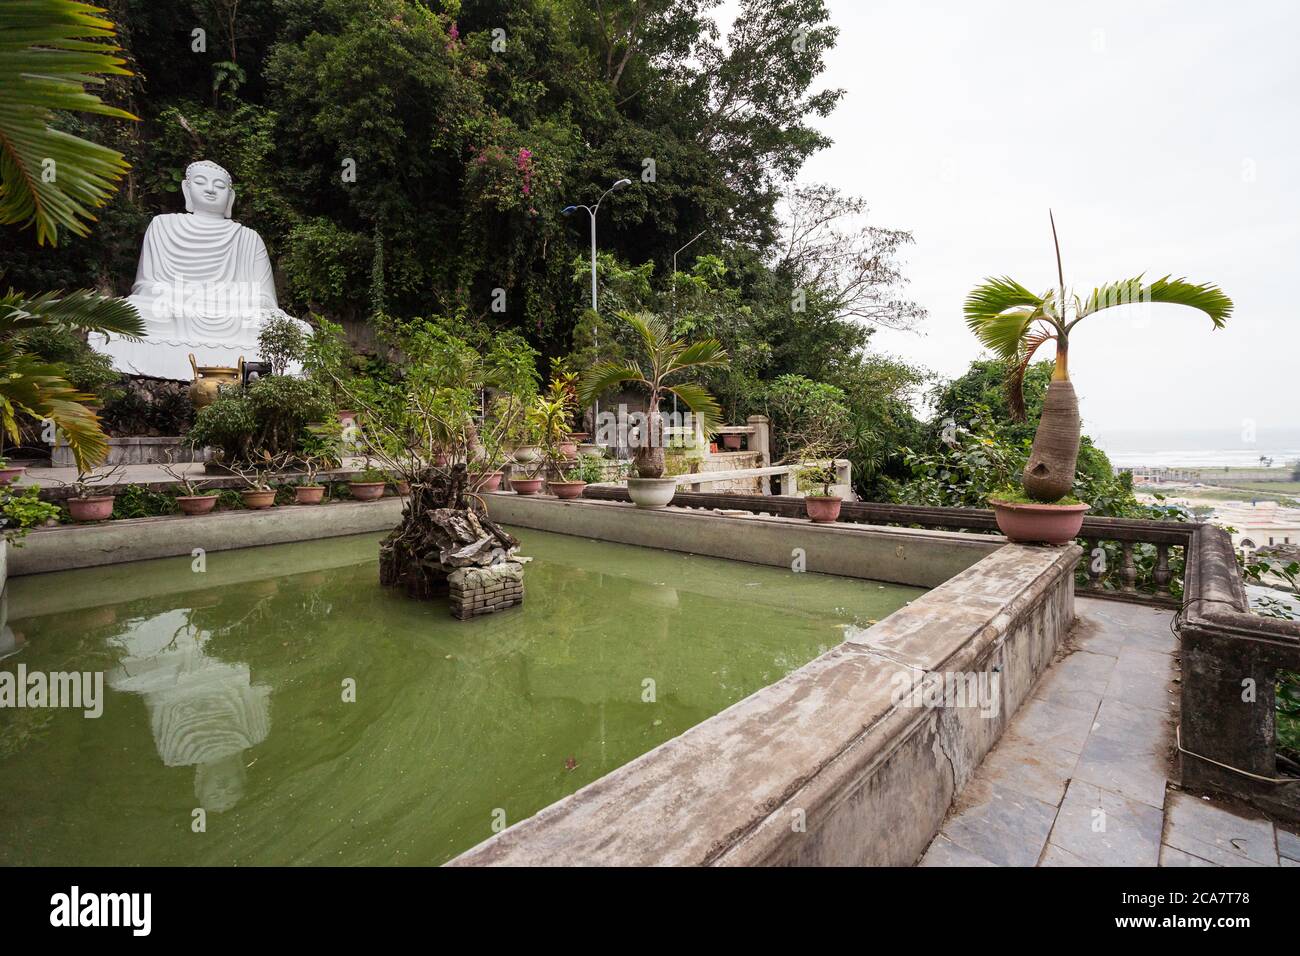 Da Nang / Vietnam - 15 janvier 2020 : sculpture de bouddha en marbre blanc avec réflexion sur l'eau de la piscine dans les montagnes de marbre Banque D'Images